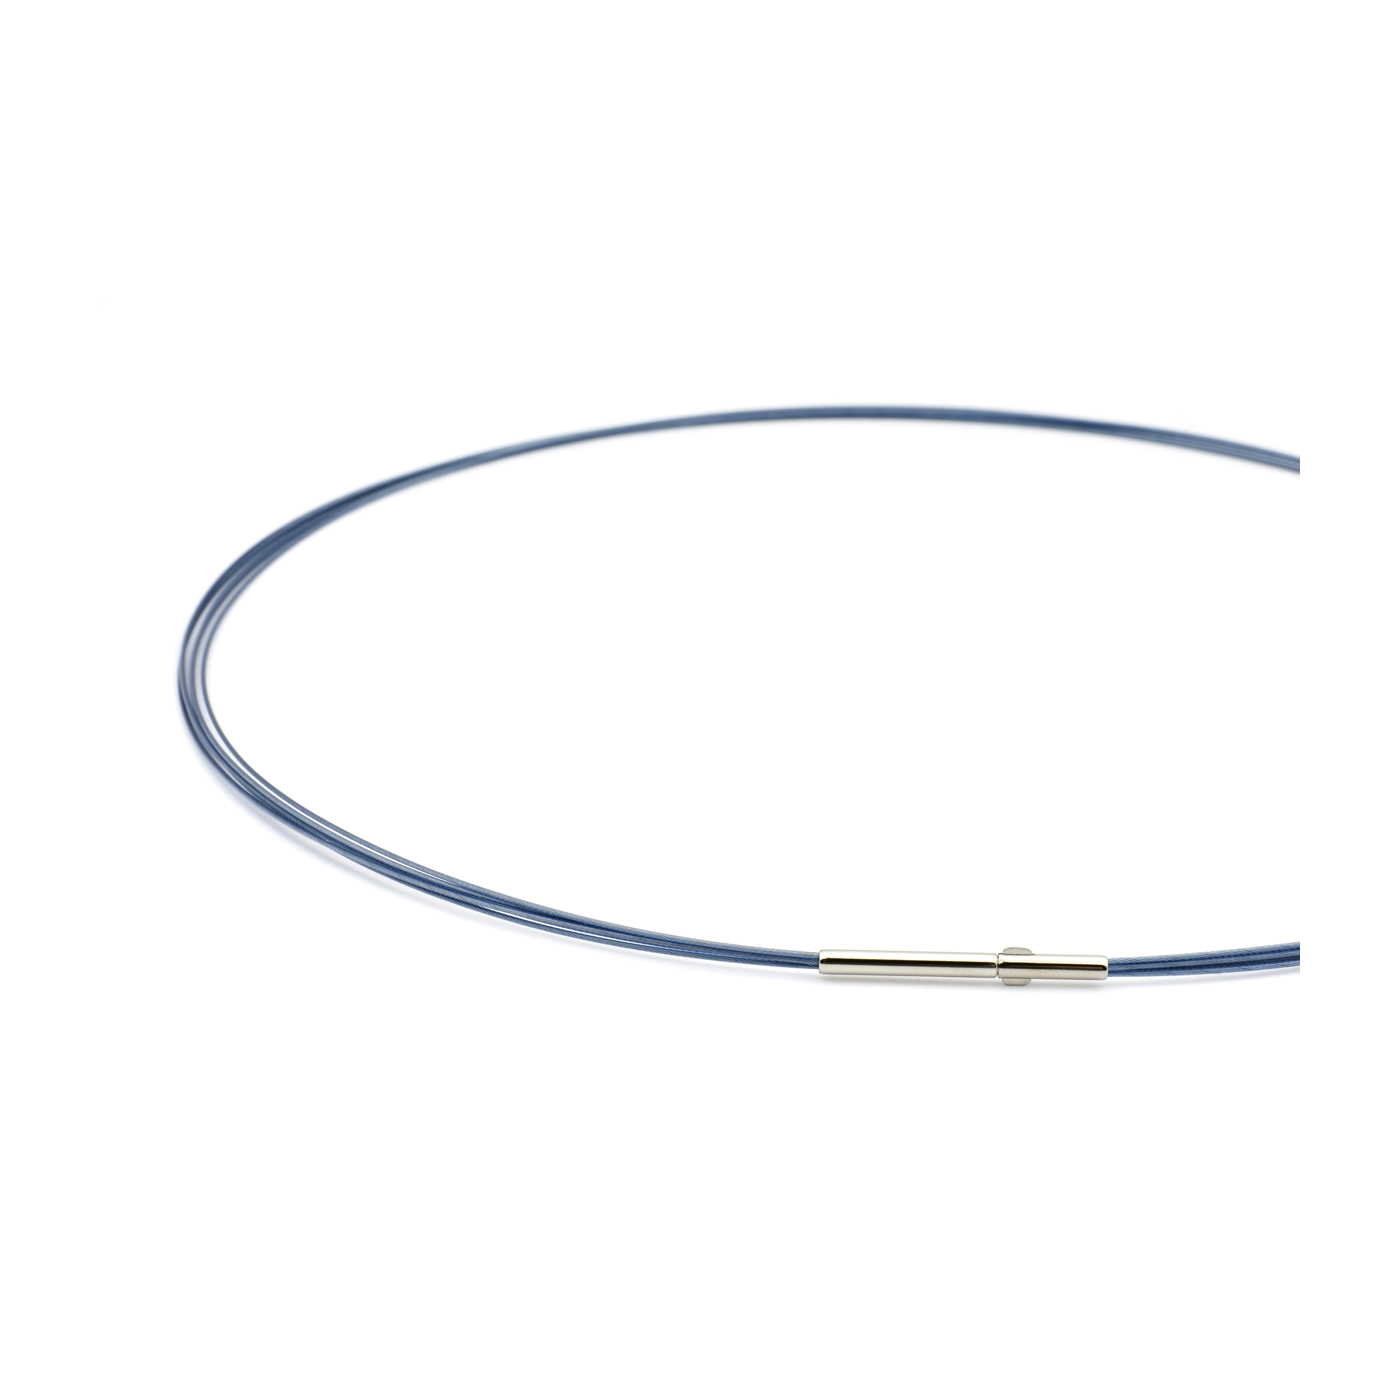 Seilcollier "Colour Cable", ES, montana-blau, 5-reihig, 42cm - 1 Stück